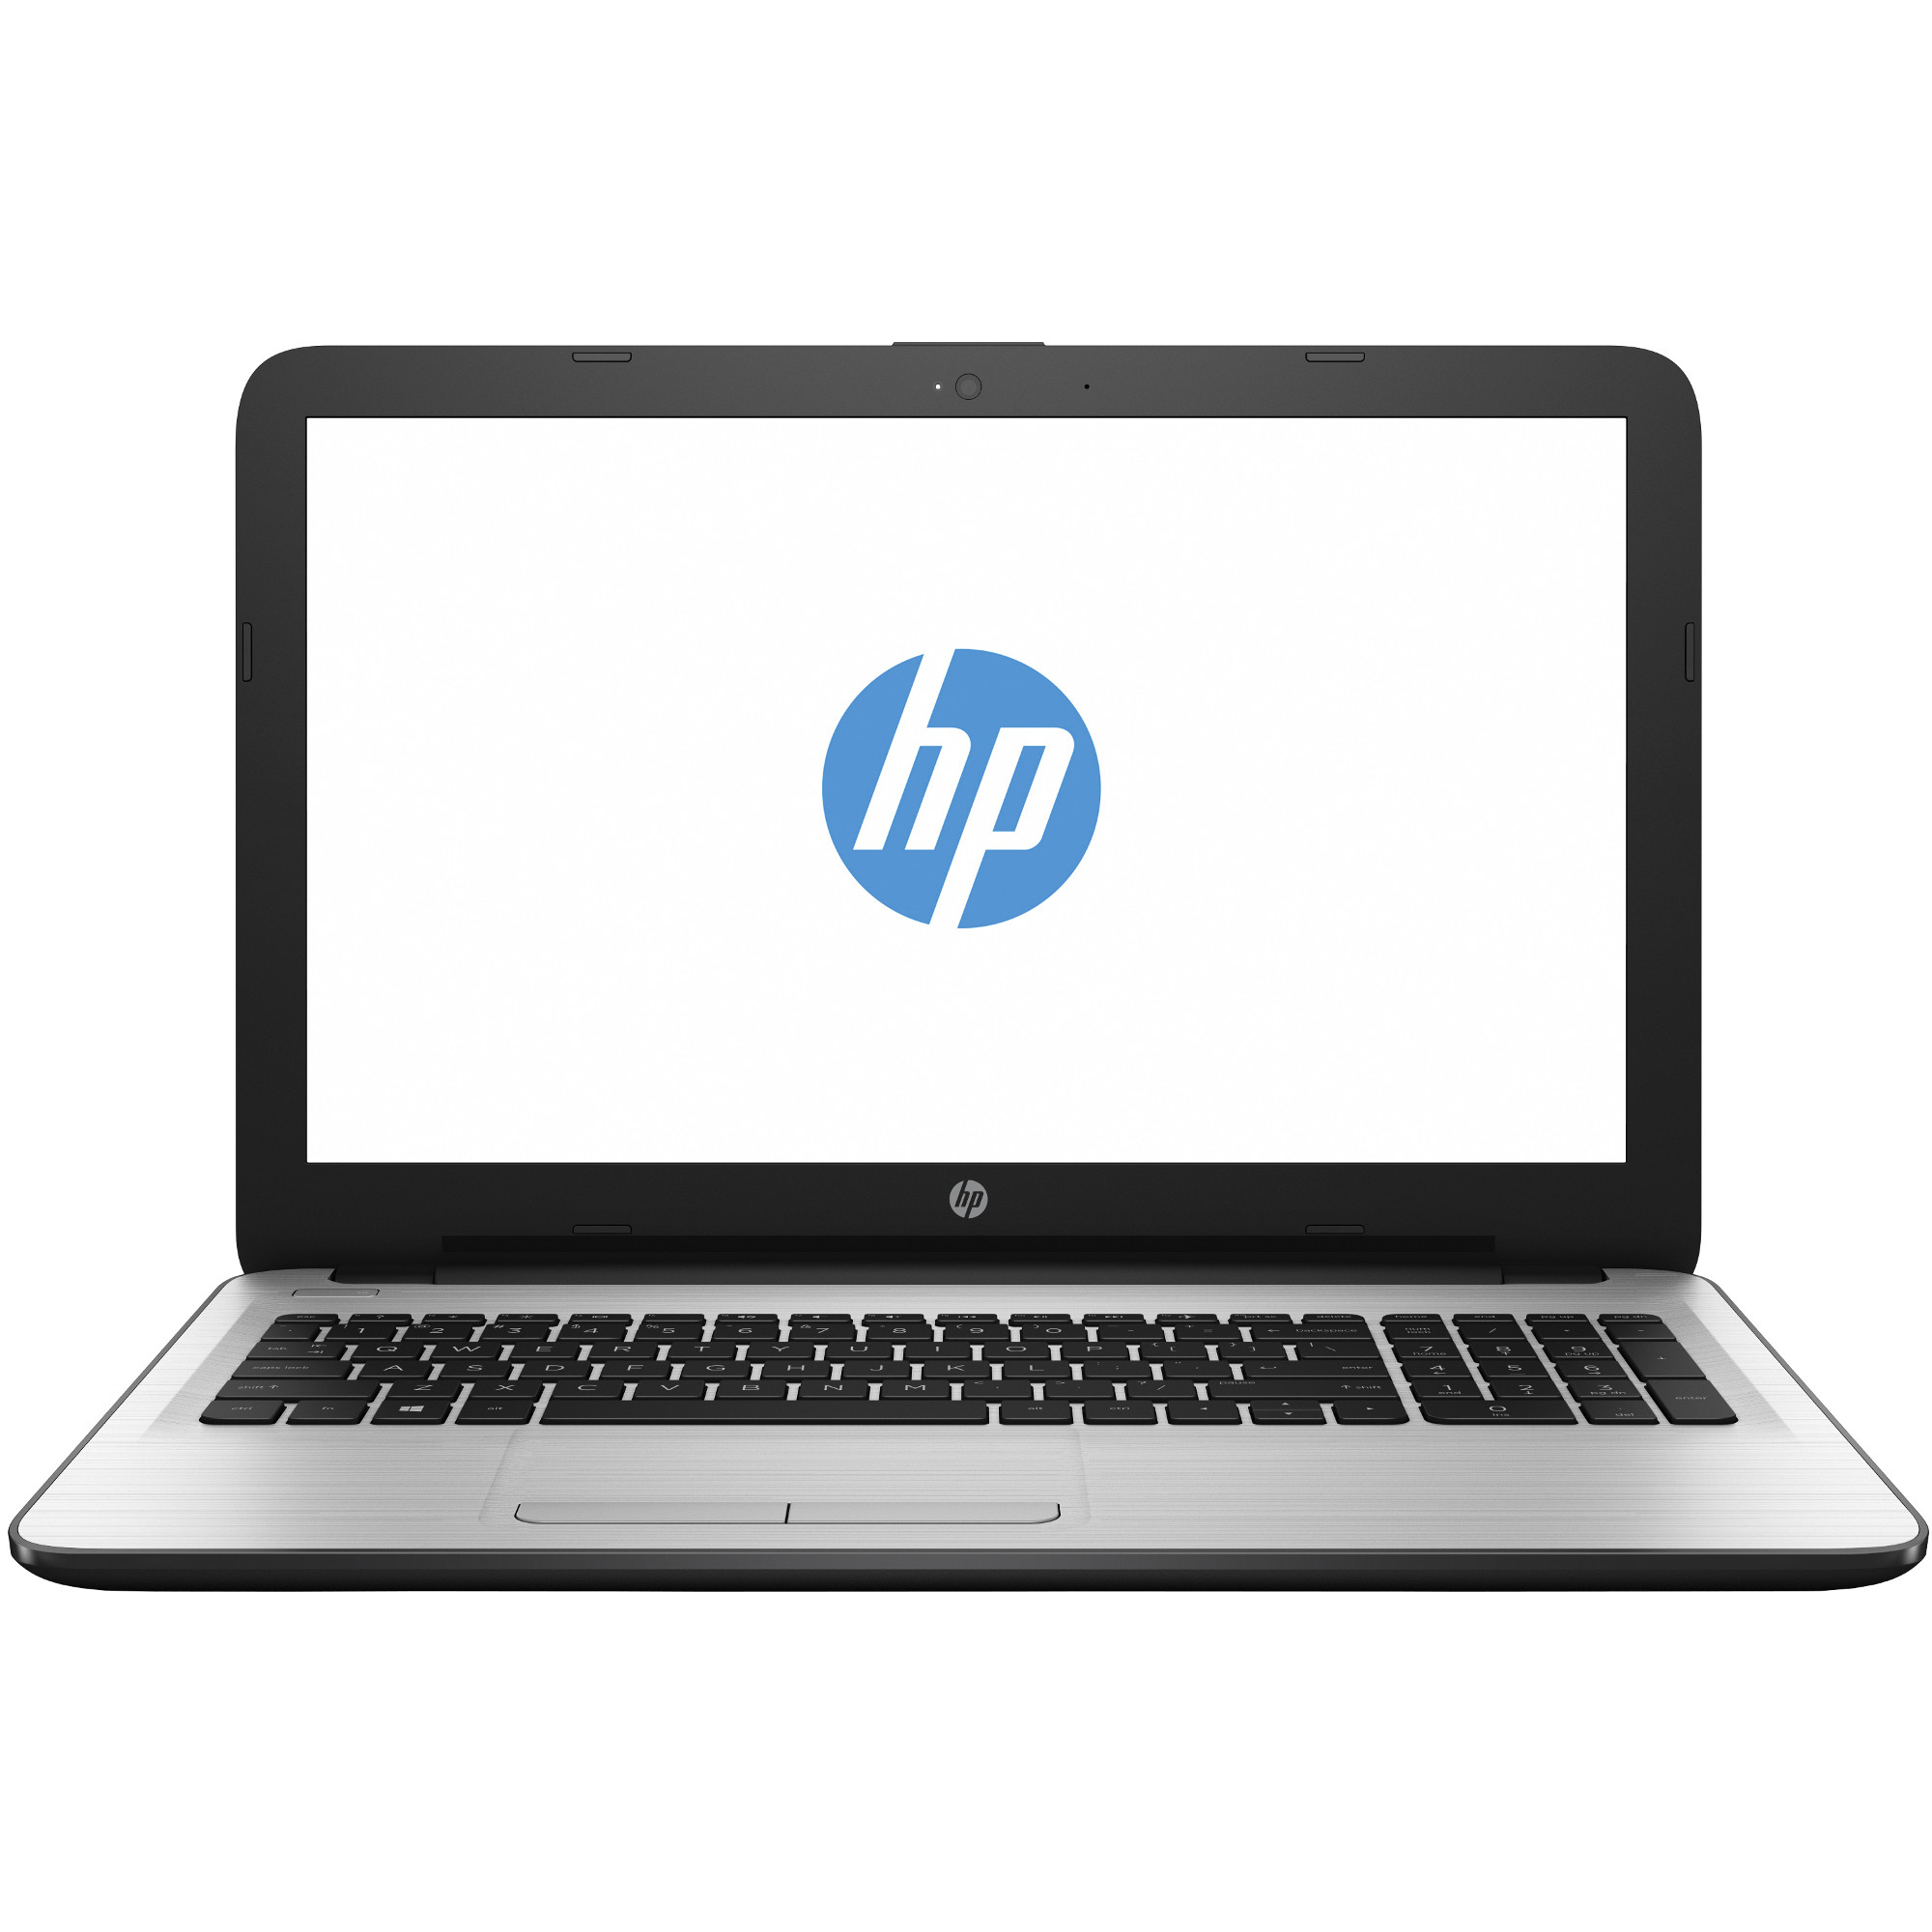 Laptop HP 15-ay012nq, Intel Core i5-6200U, 4GB DDR3, HDD 500GB, AMD Radeon R5 M430 2GB, Free DOS